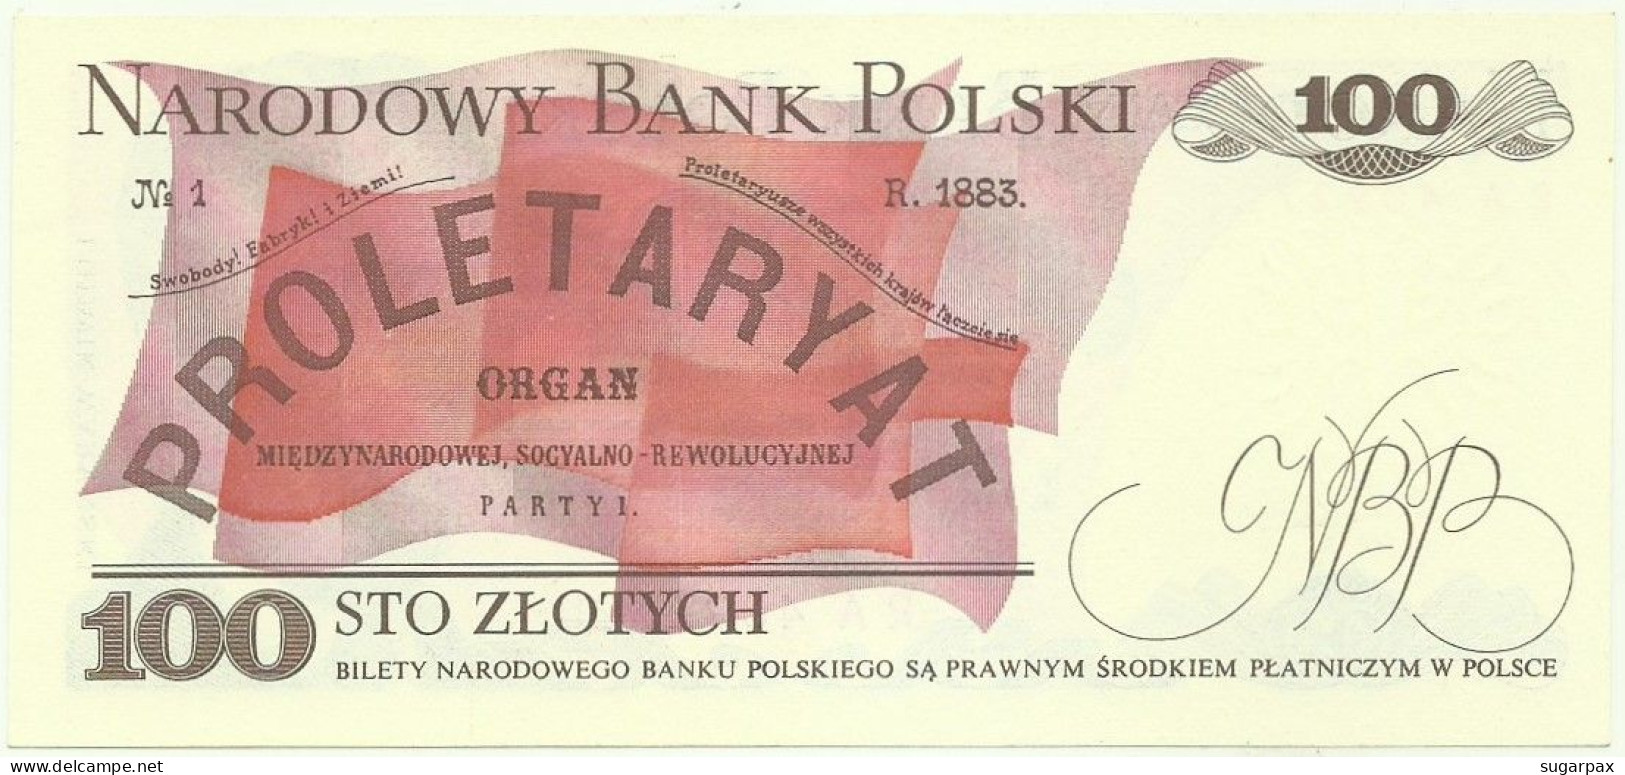 POLAND - 100 Zlotych - 1988 - Pick 143.e - Unc. - Série TT - Narodowy Bank Polski - Poland